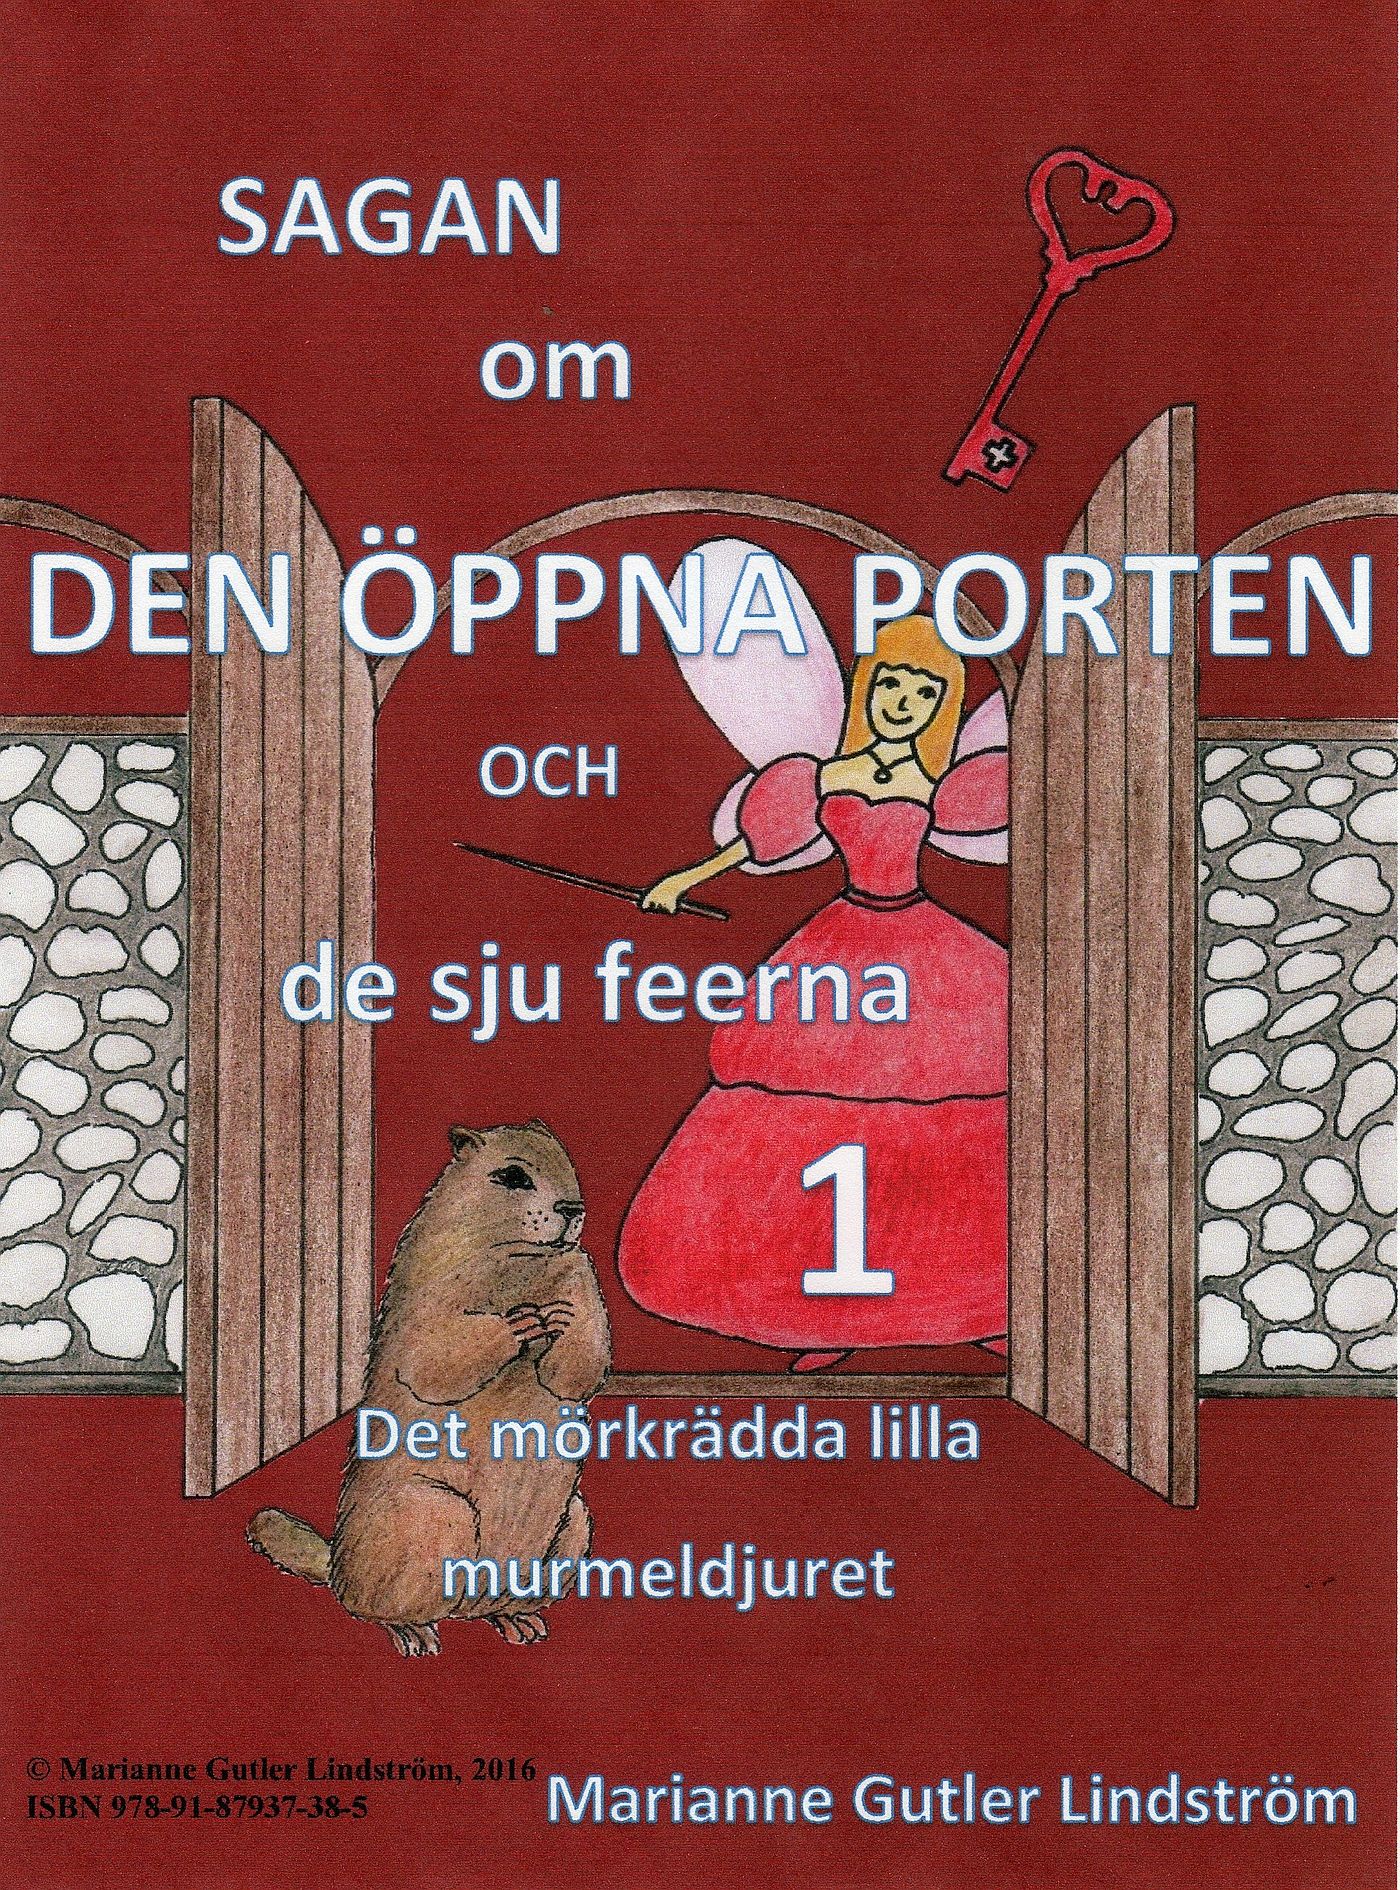 Sagan om den öppna porten 1. Det mörkrädda lilla murmeldjuret, e-bok av Marianne Gutler Lindström